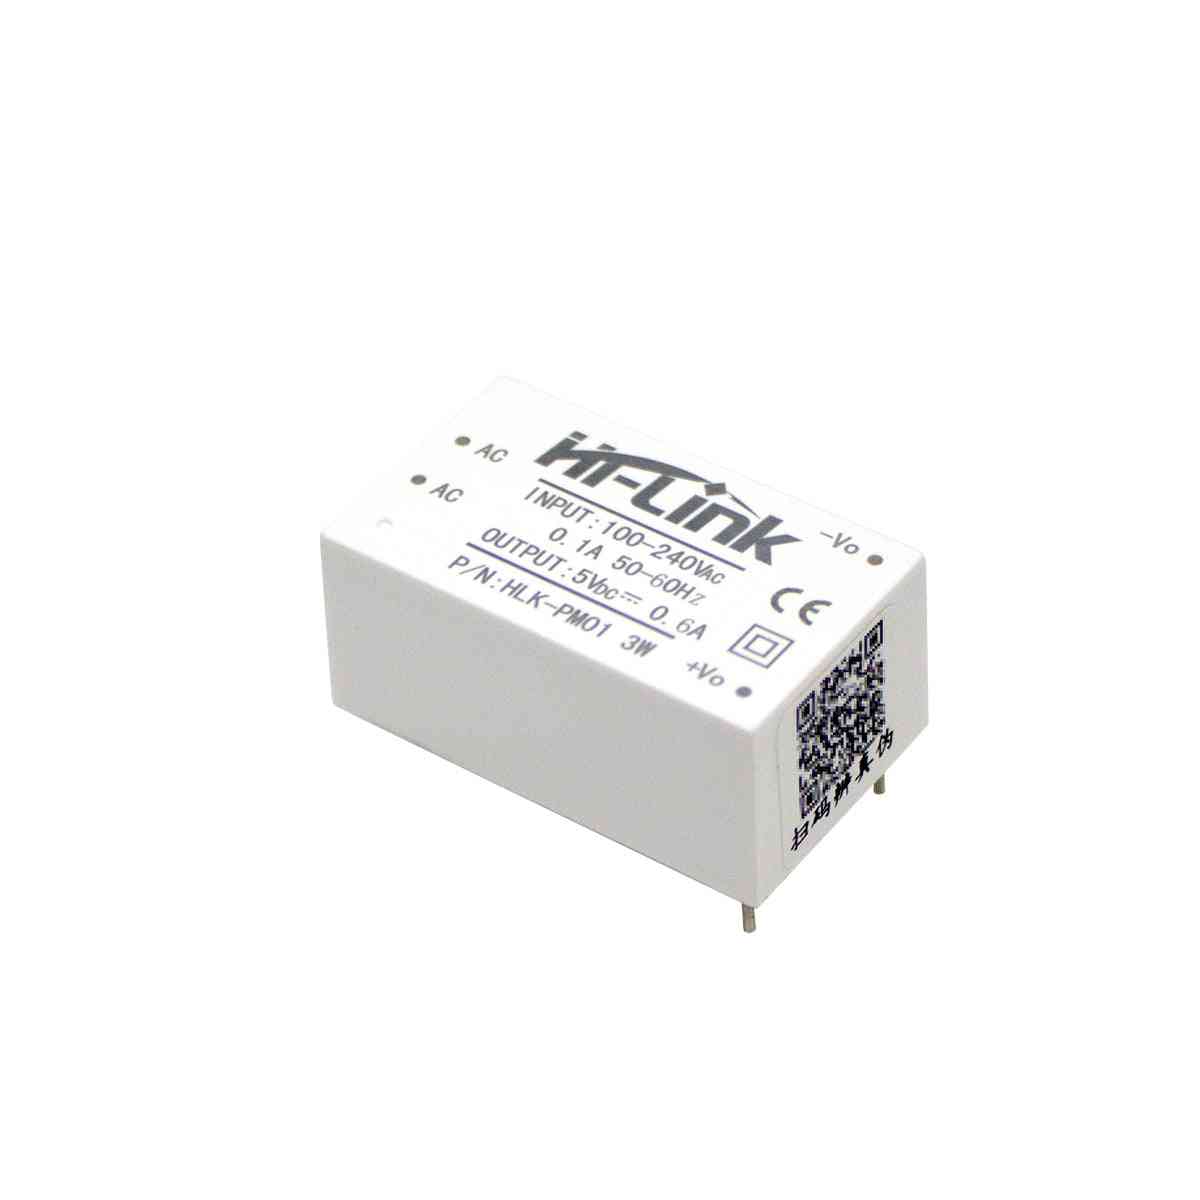 Smart-Remote hlk-pm01 módulo de alimentación ac / dc blanco -